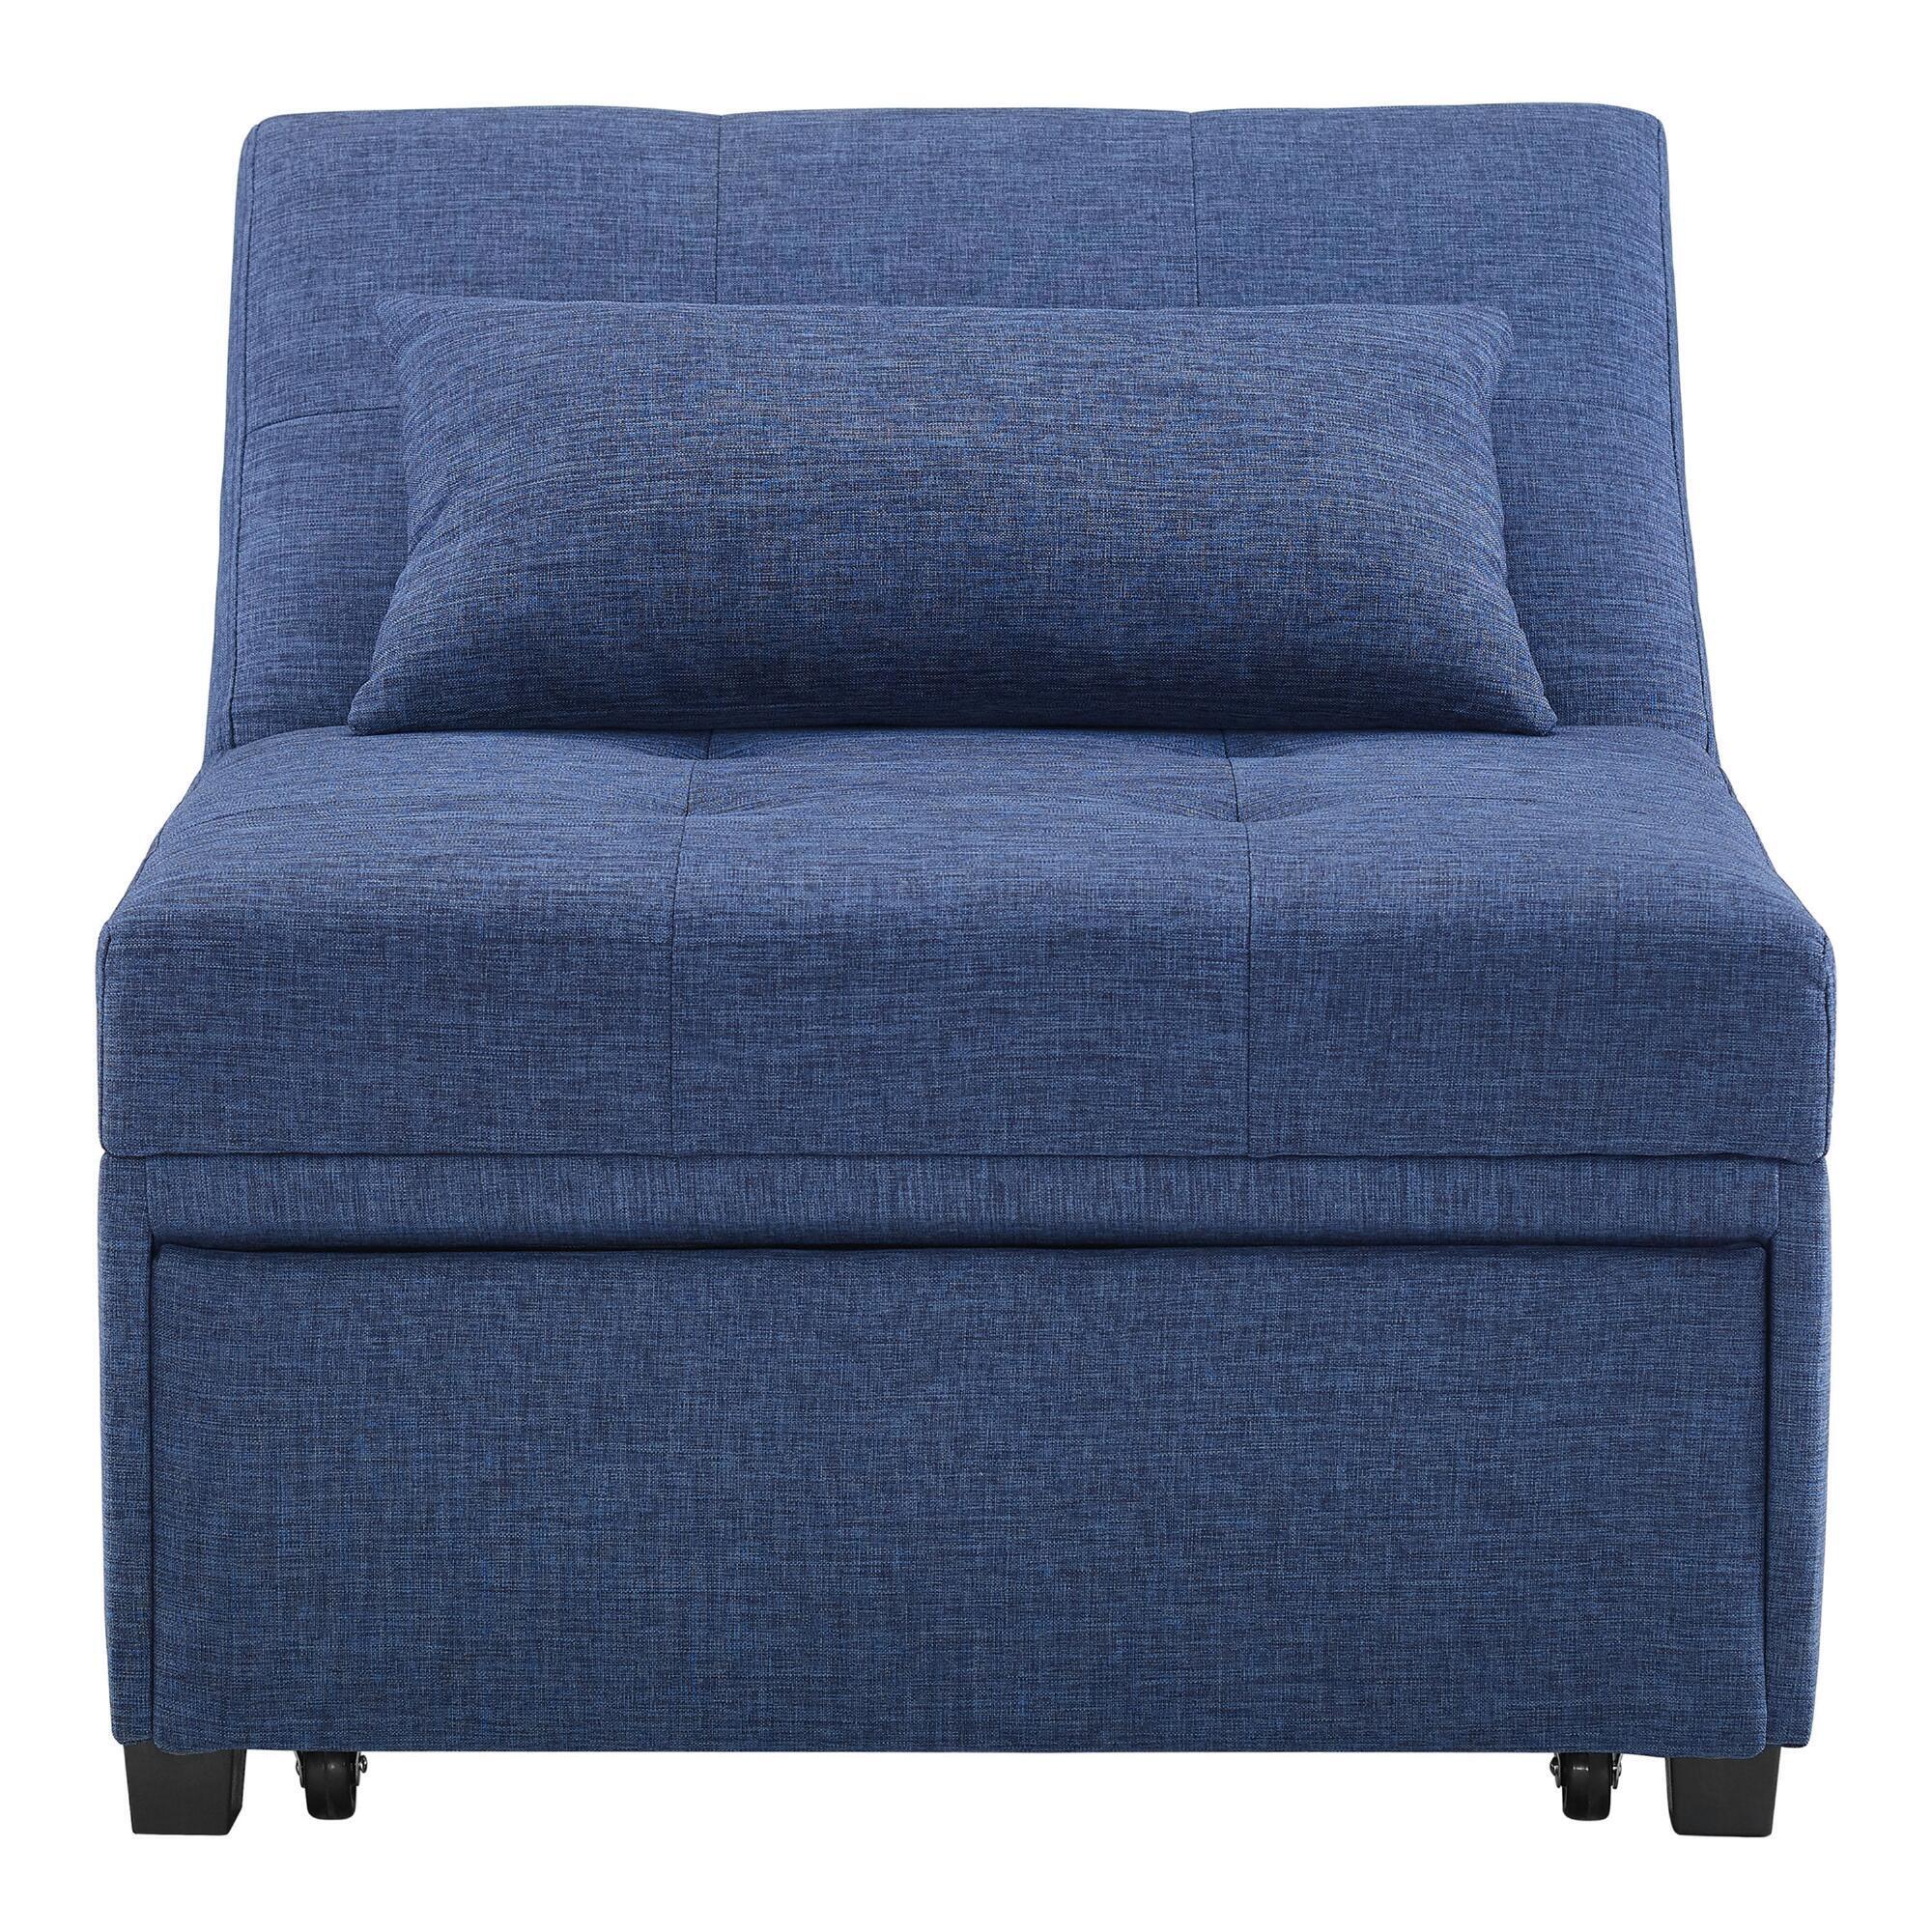 Carter Sleeper Chair: Blue by World Market